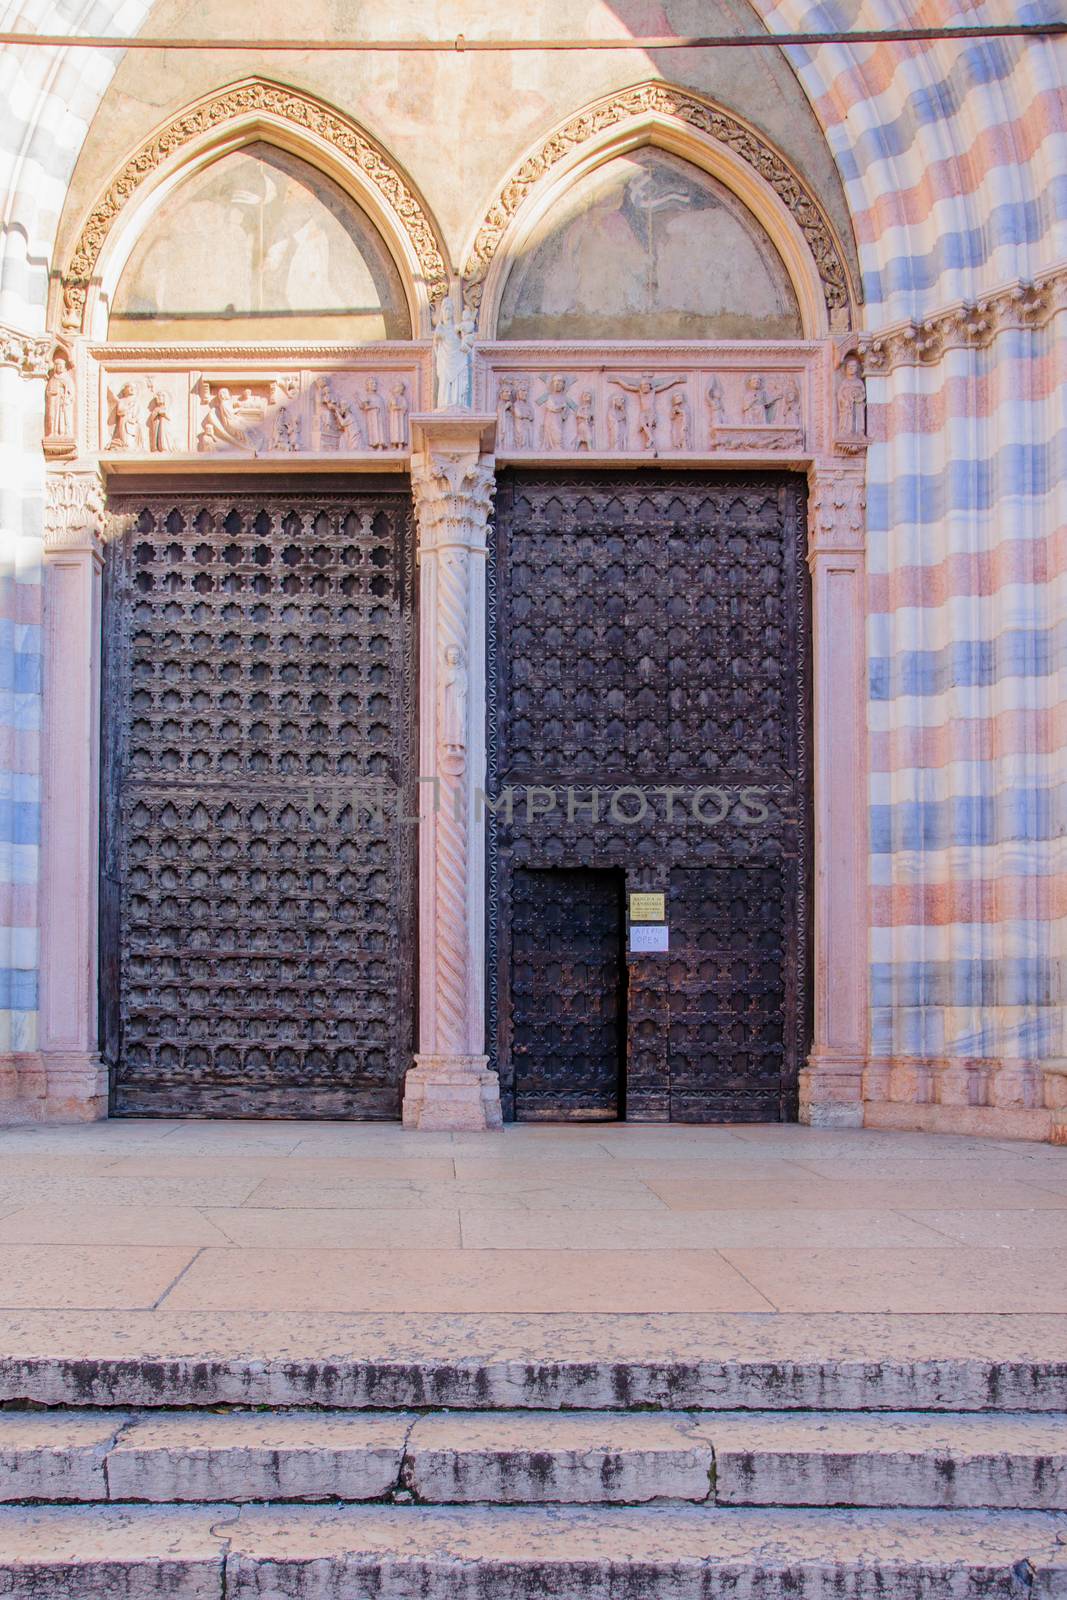 The doors of Sant-Anastasia church in Verona, Veneto, Italy